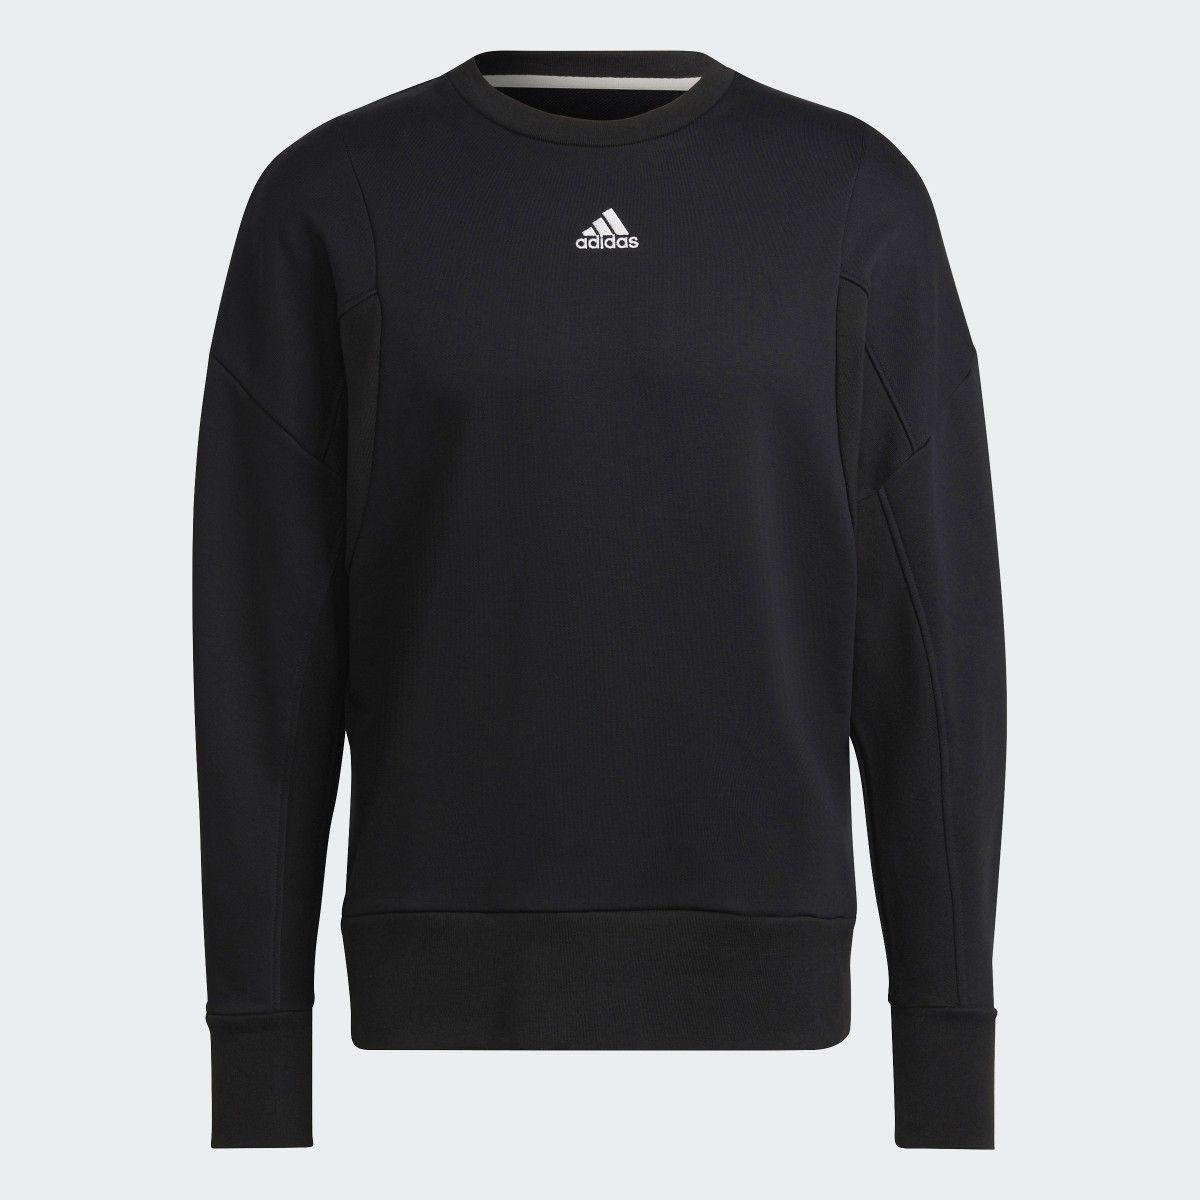 Adidas Studio Lounge Fleece Sweater. 5